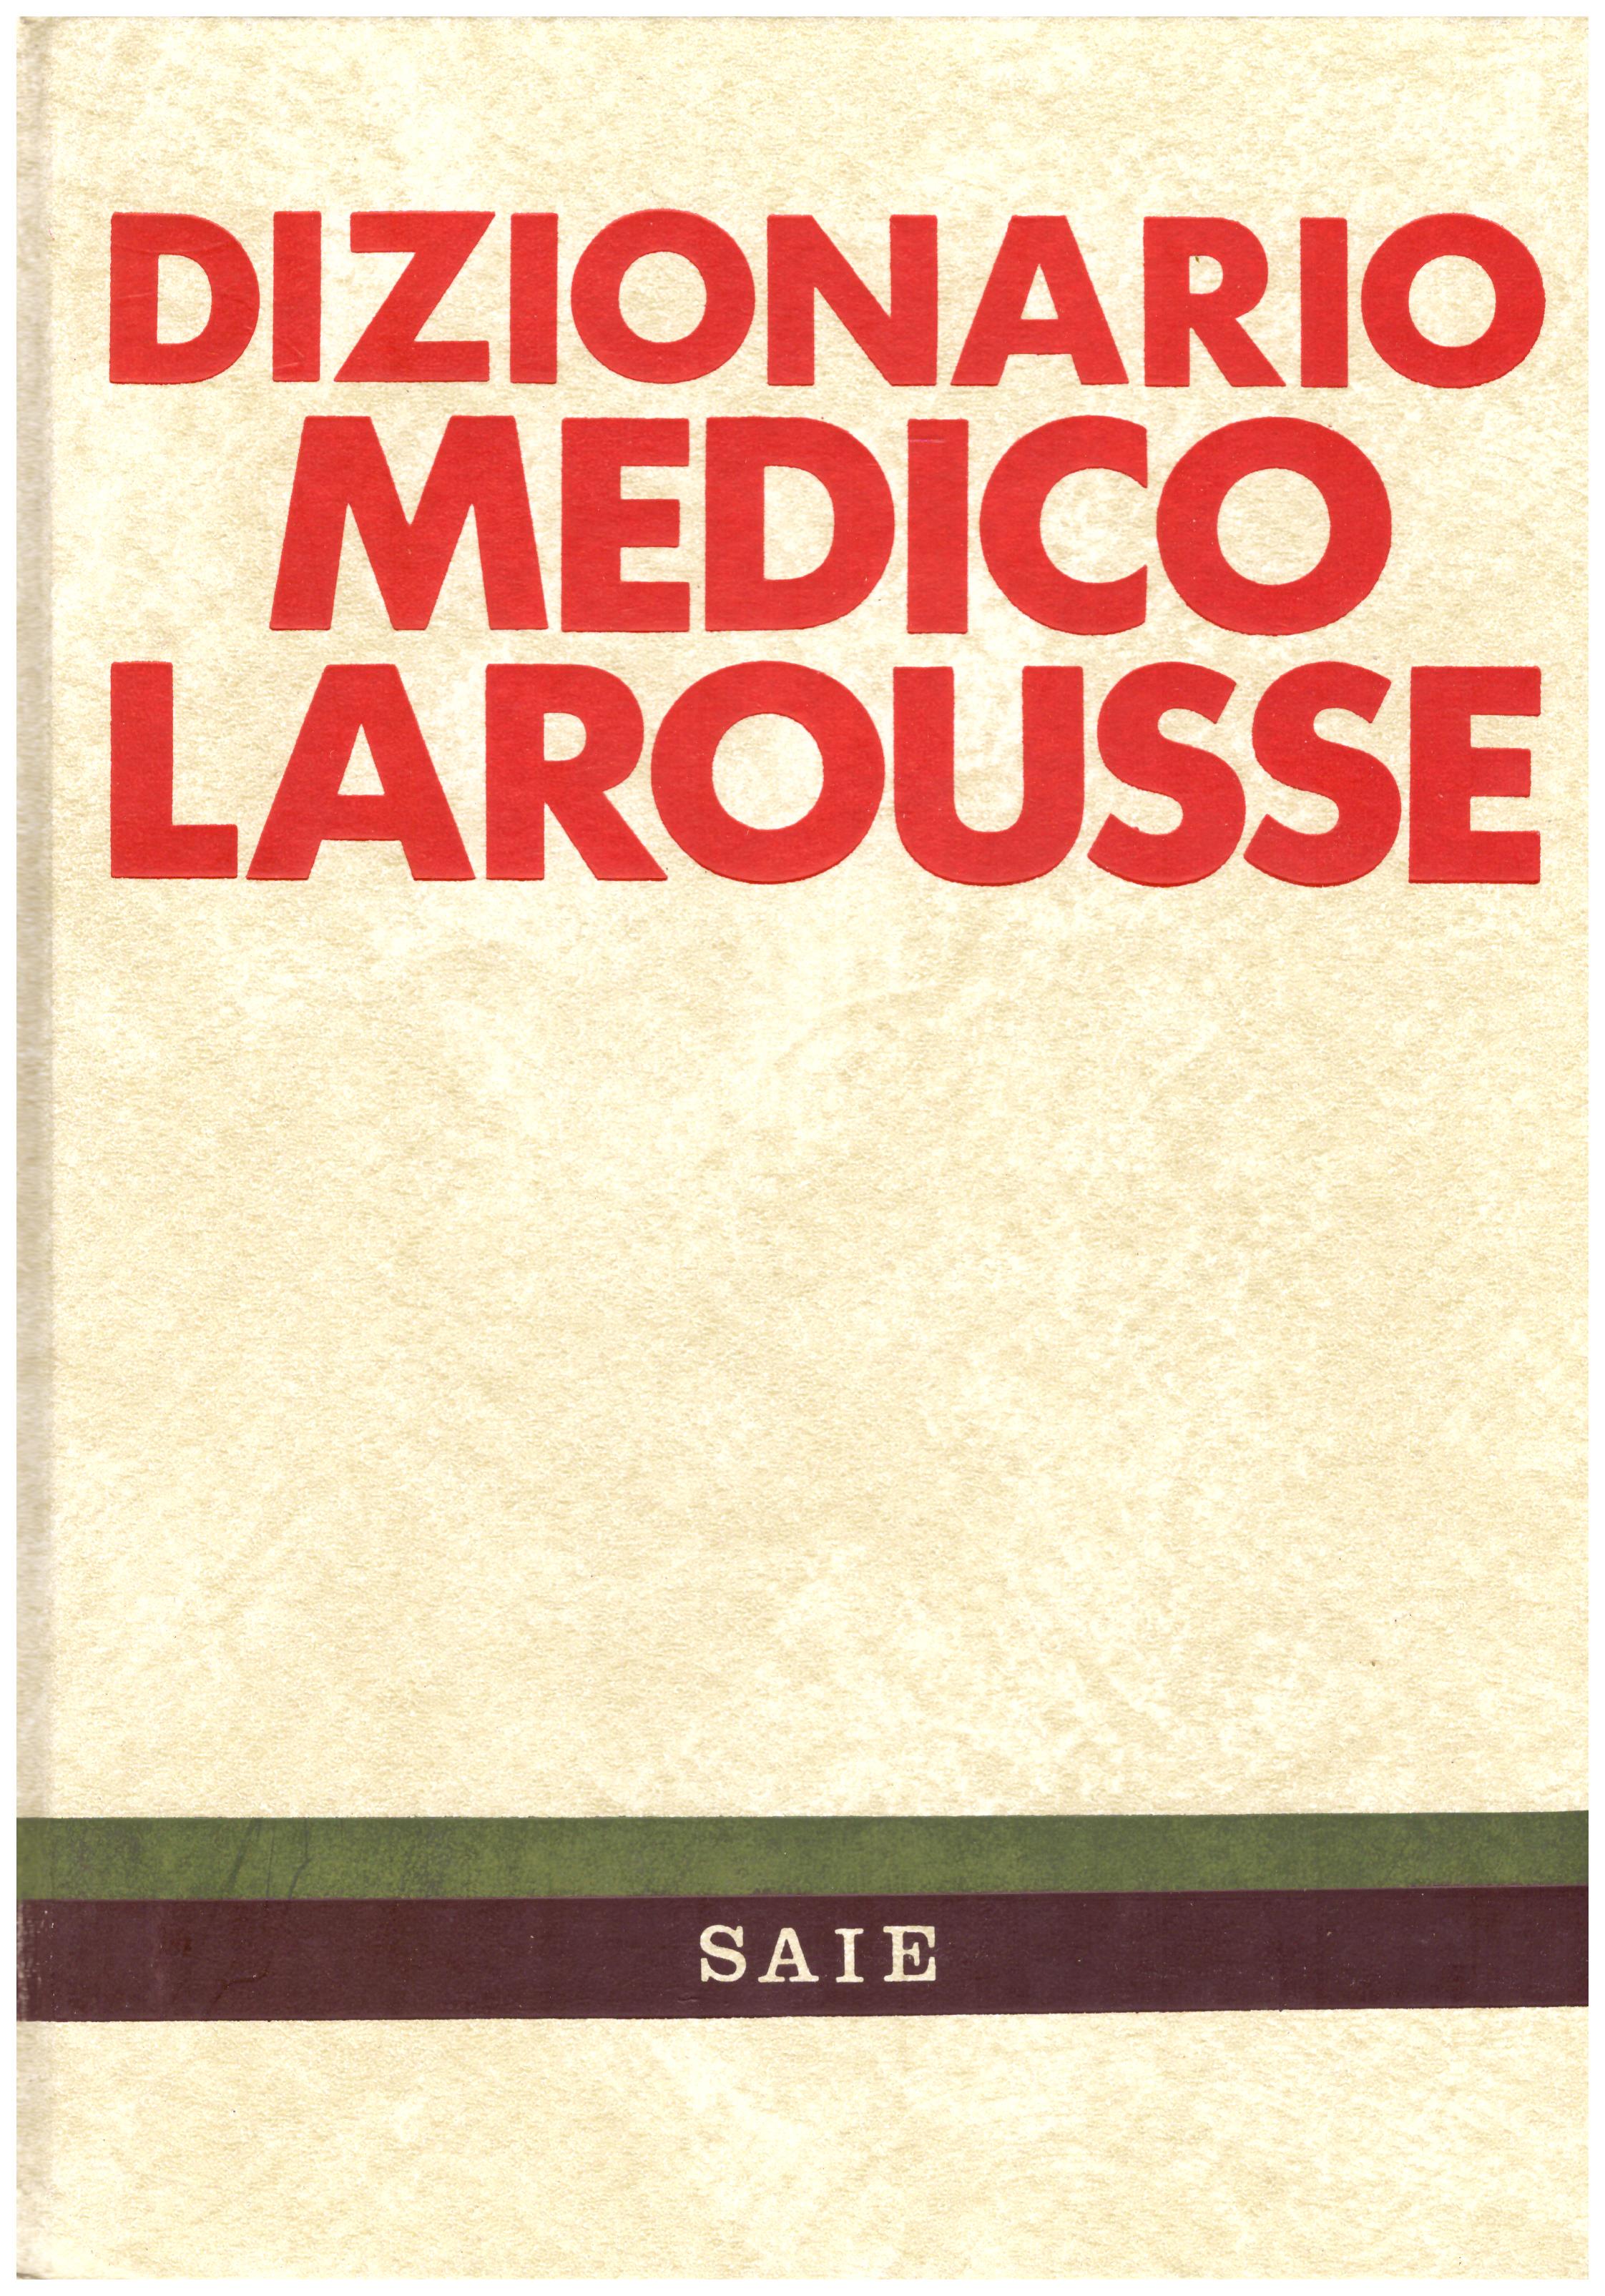 Titolo: Dizionario medico Larousse Autore: AA,VV.  Editore: Saie, 1984